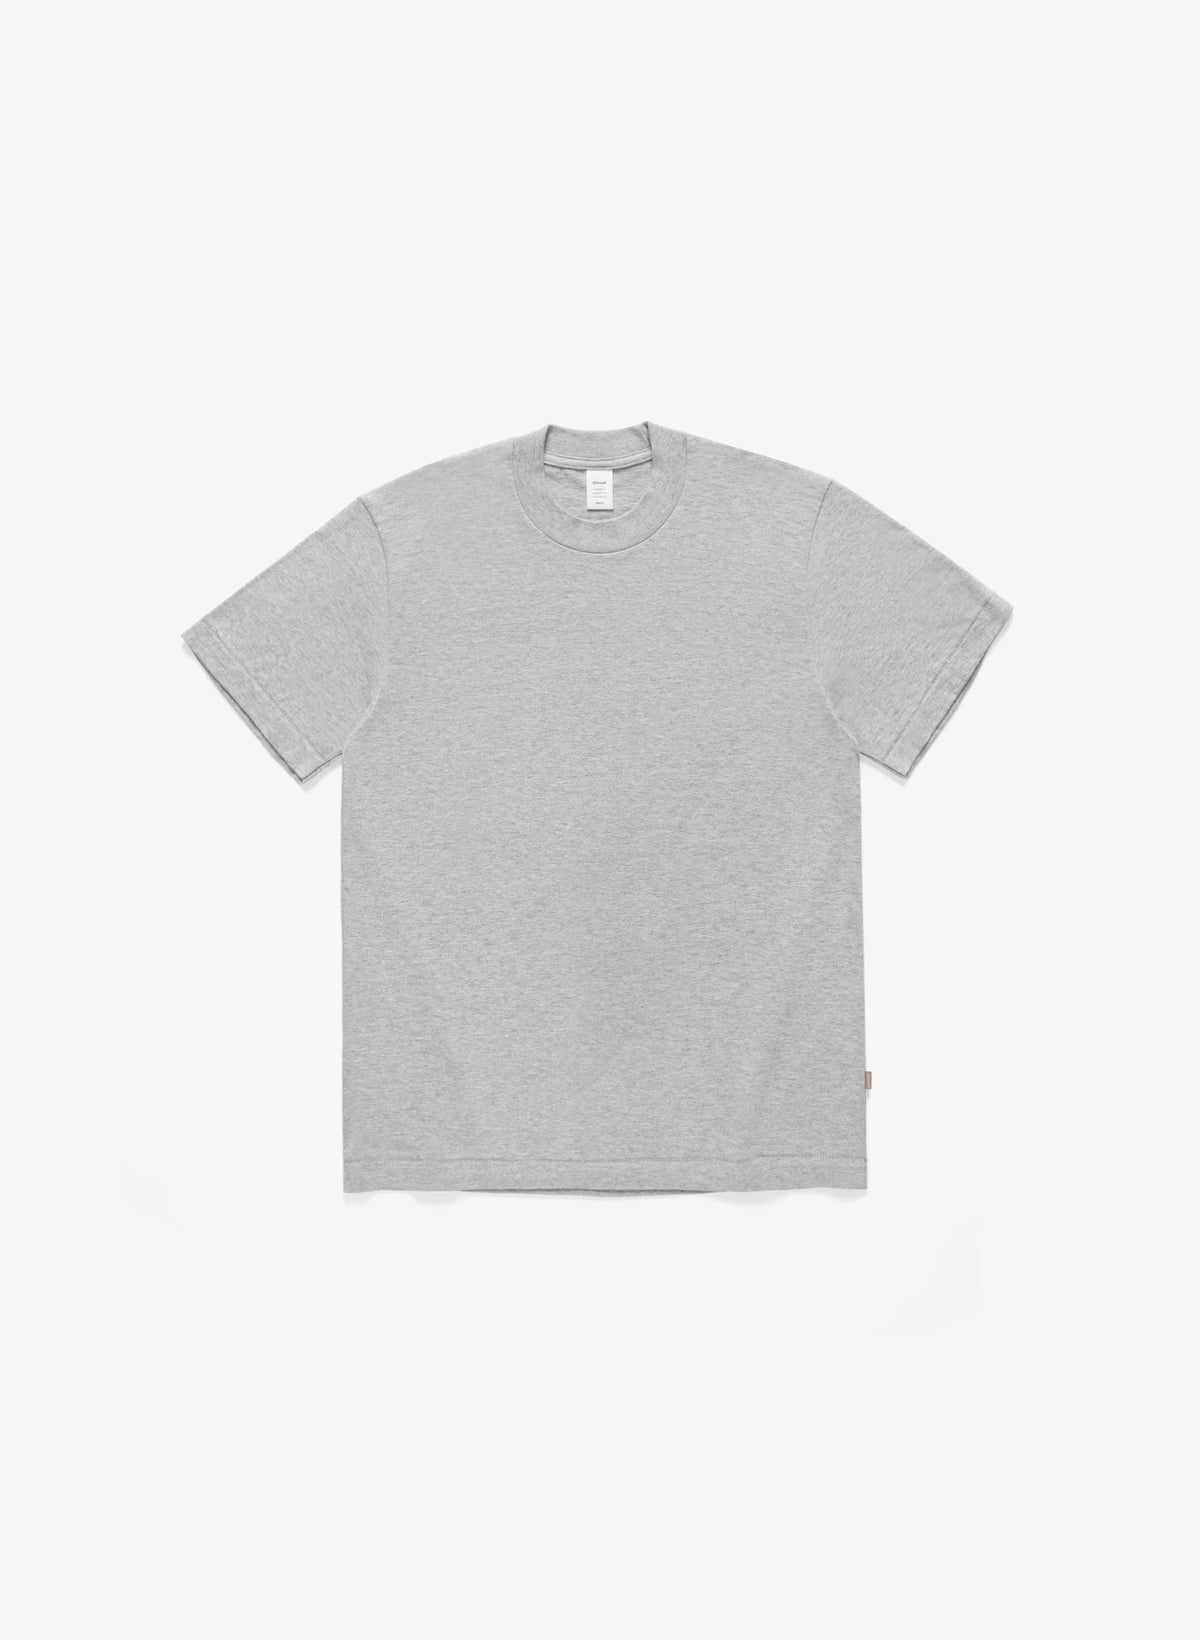 J90 T-Shirt - Light Grey Mix